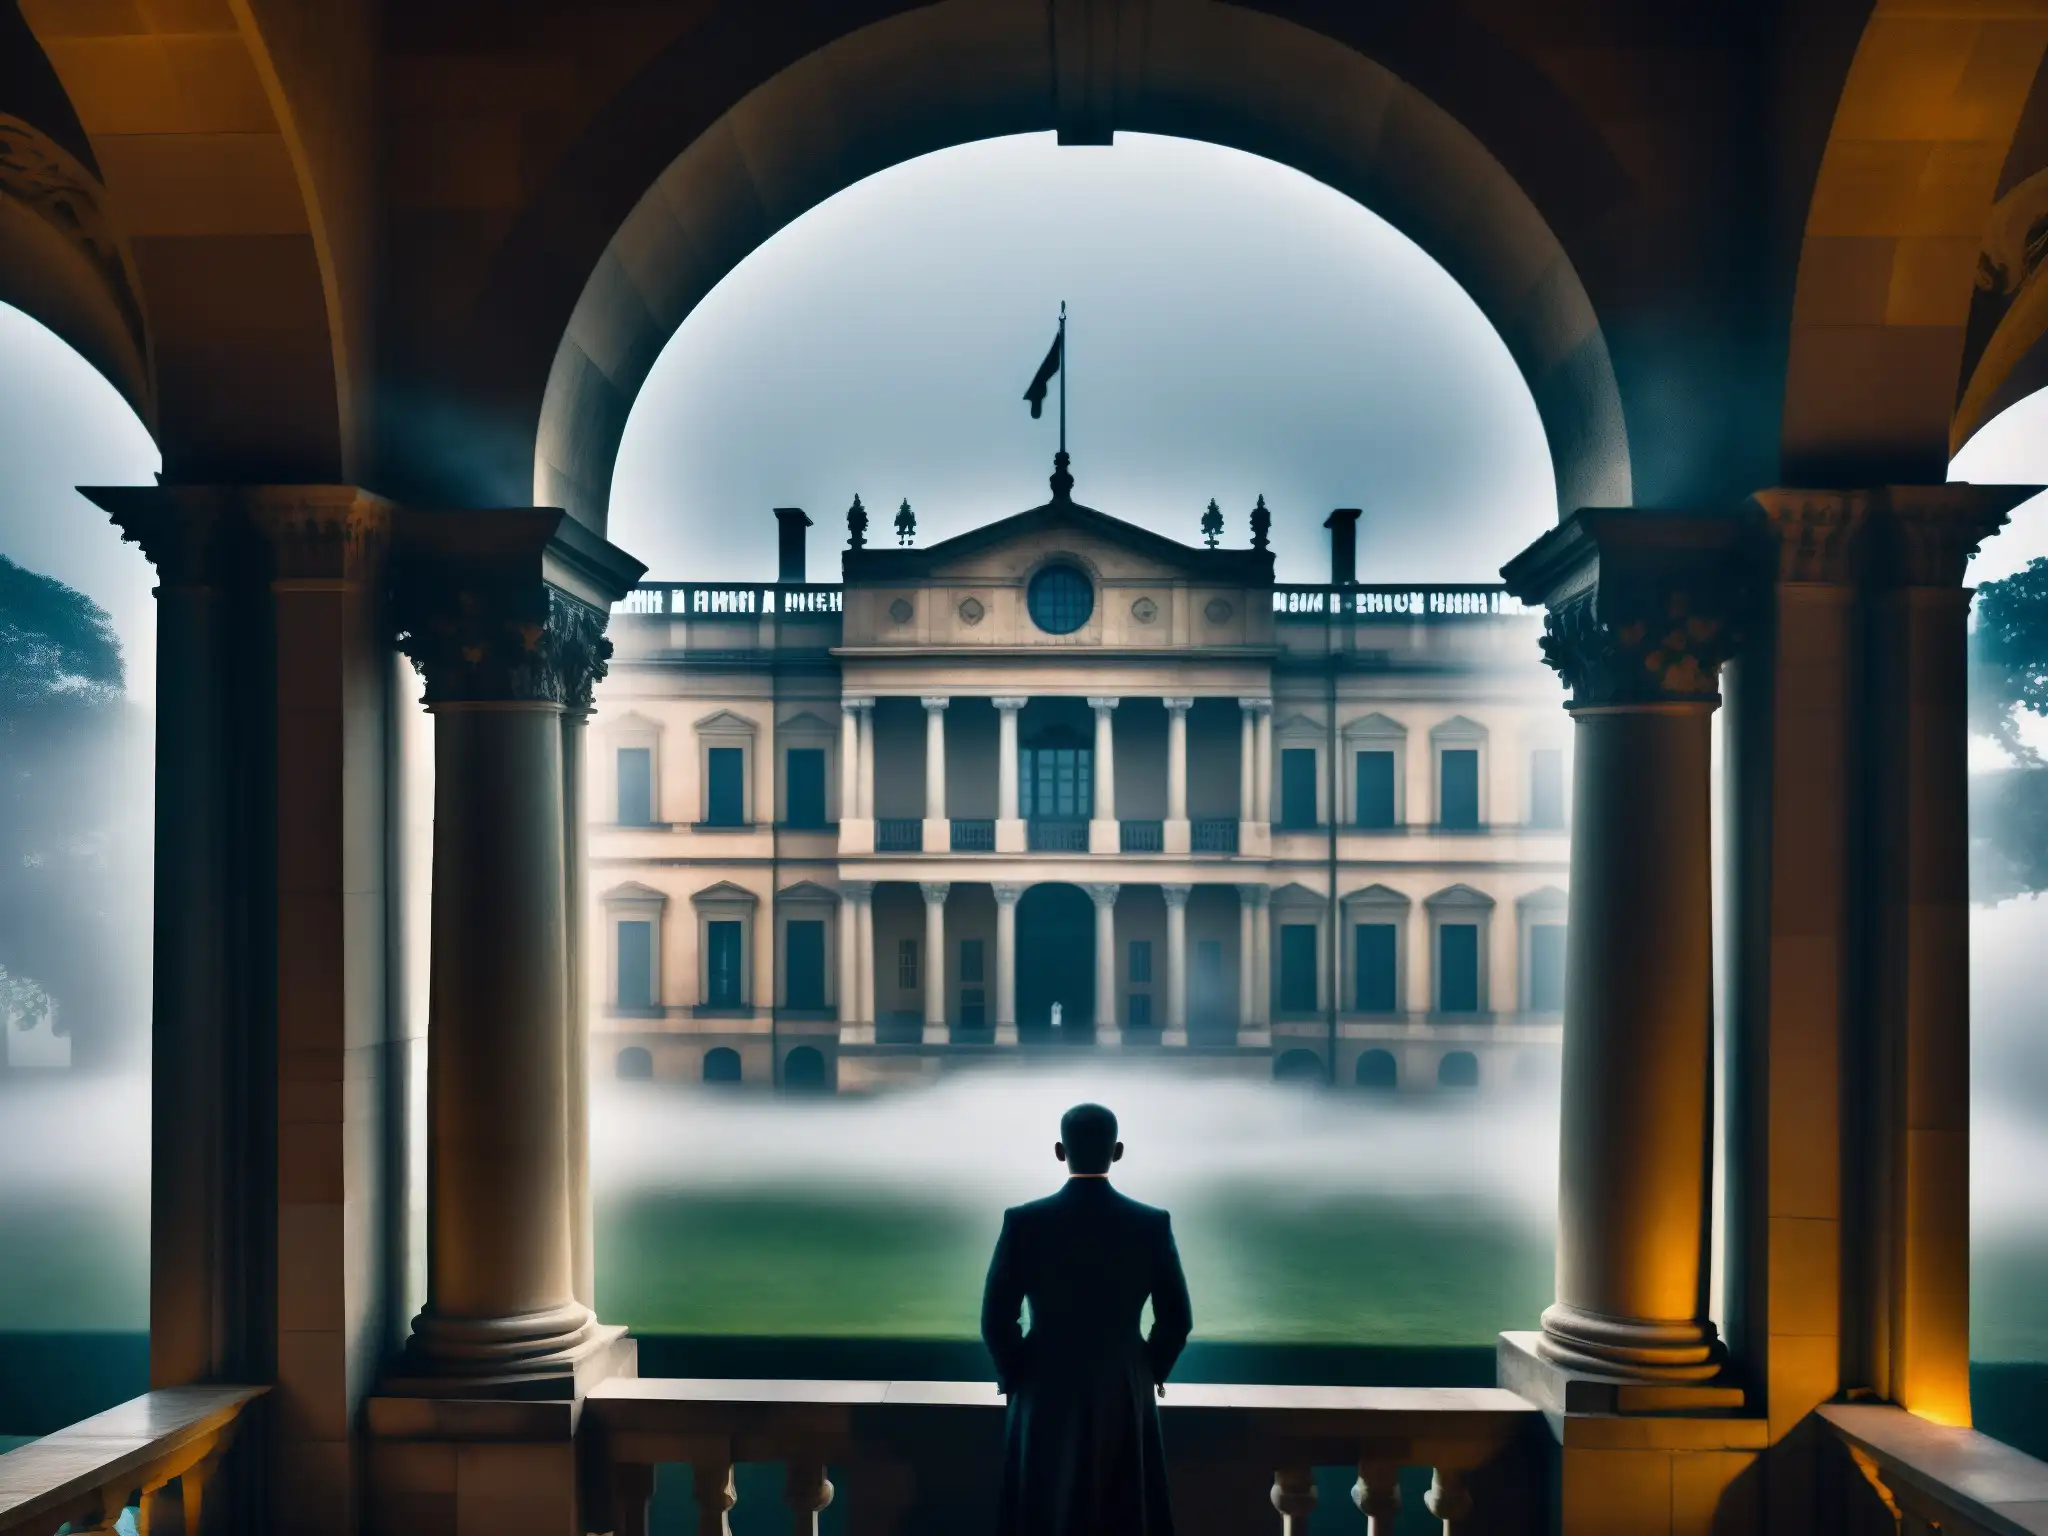 Histórica imagen de un palacio gubernamental con sombras fantasmales, evocando historias de espíritus en palacios